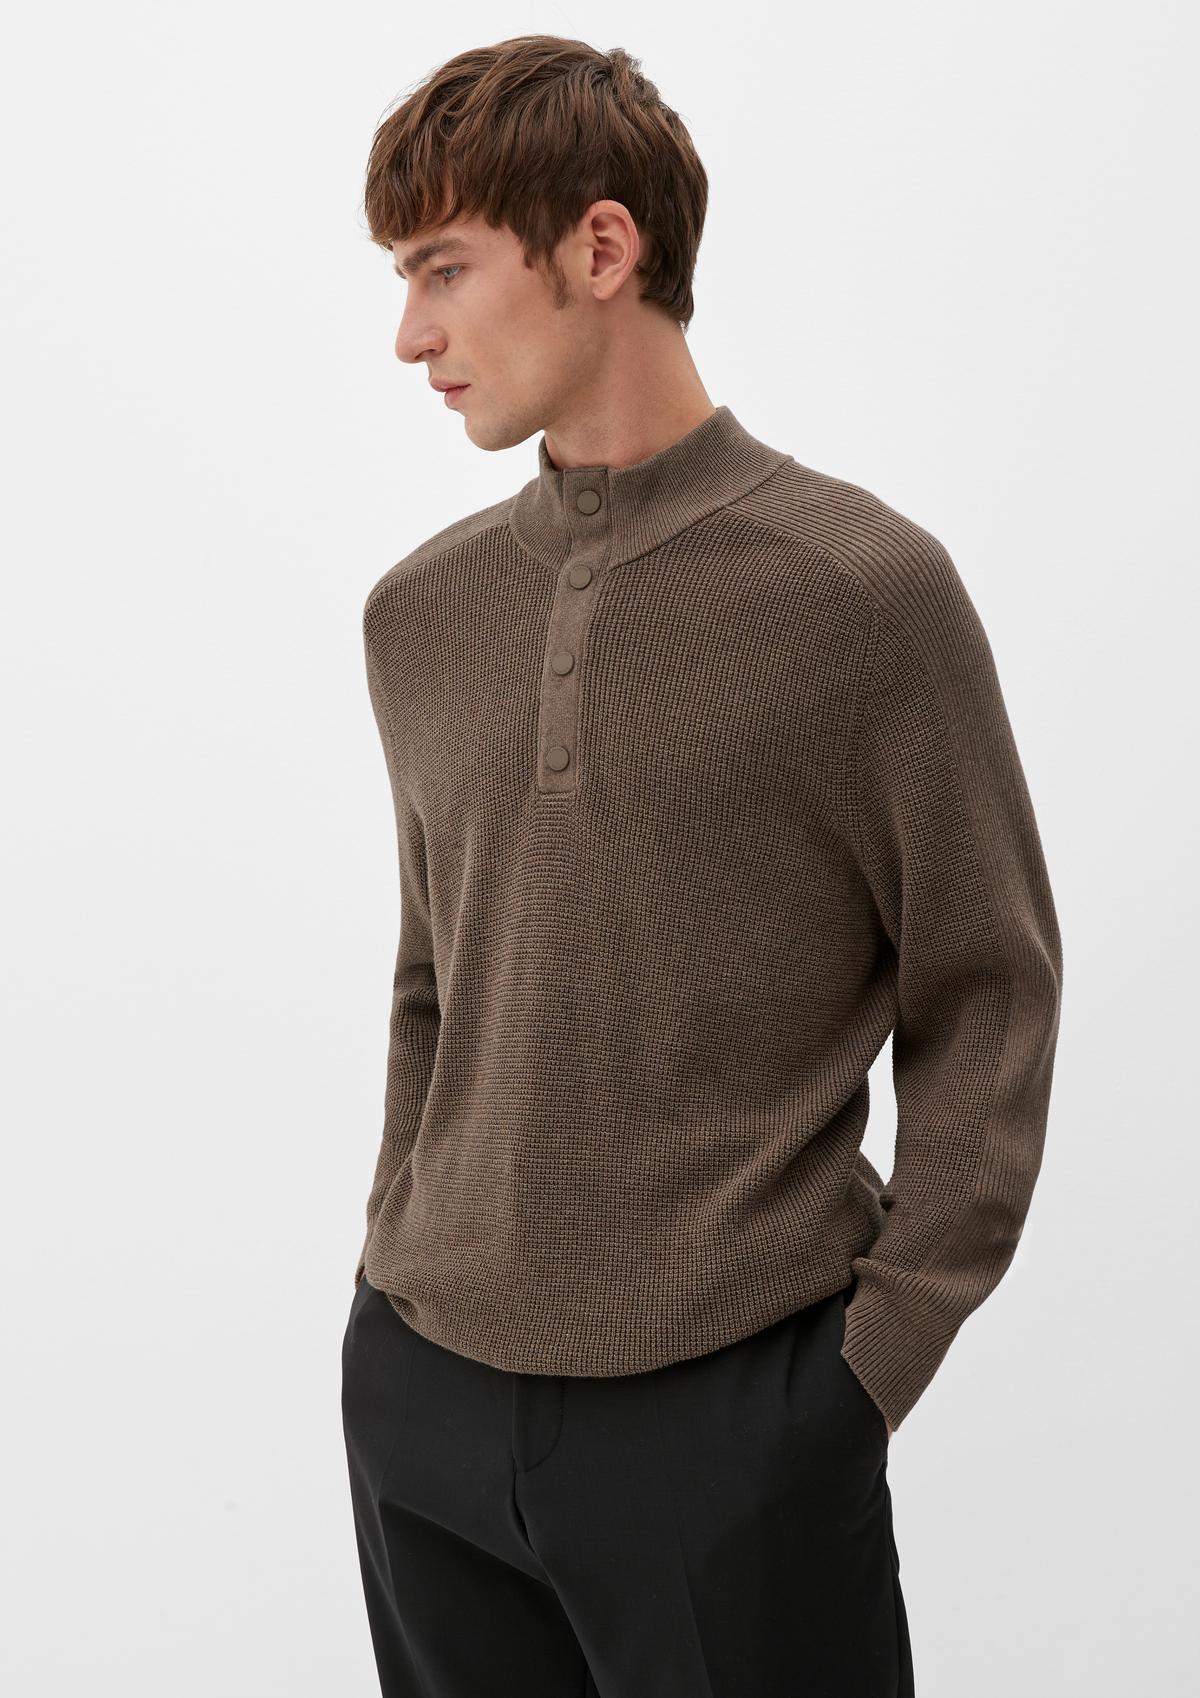 Zip neck with merino wool - navy